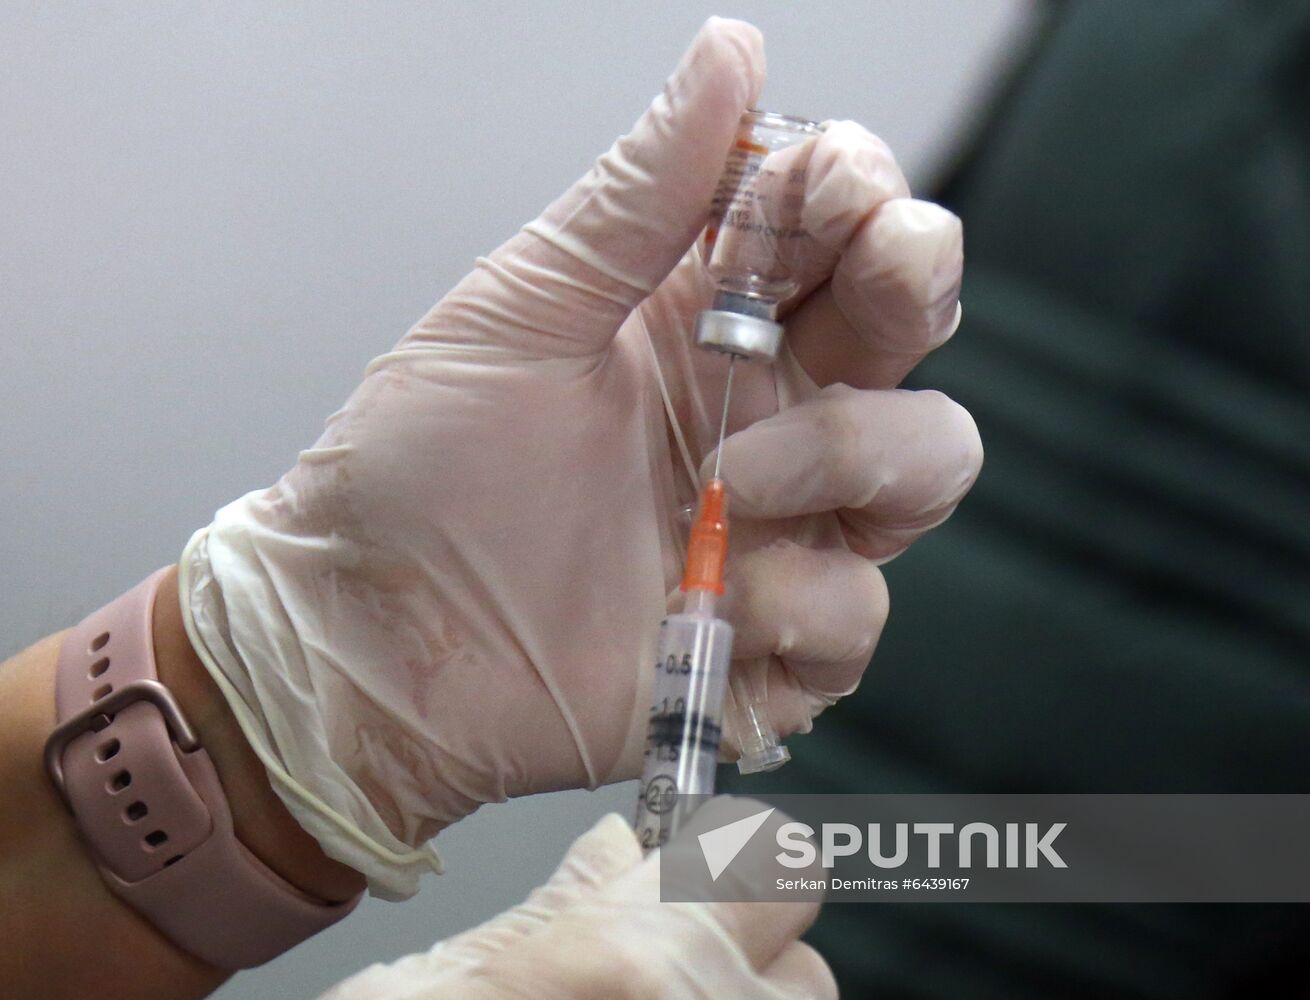 Turkey Coronavirus Vaccine